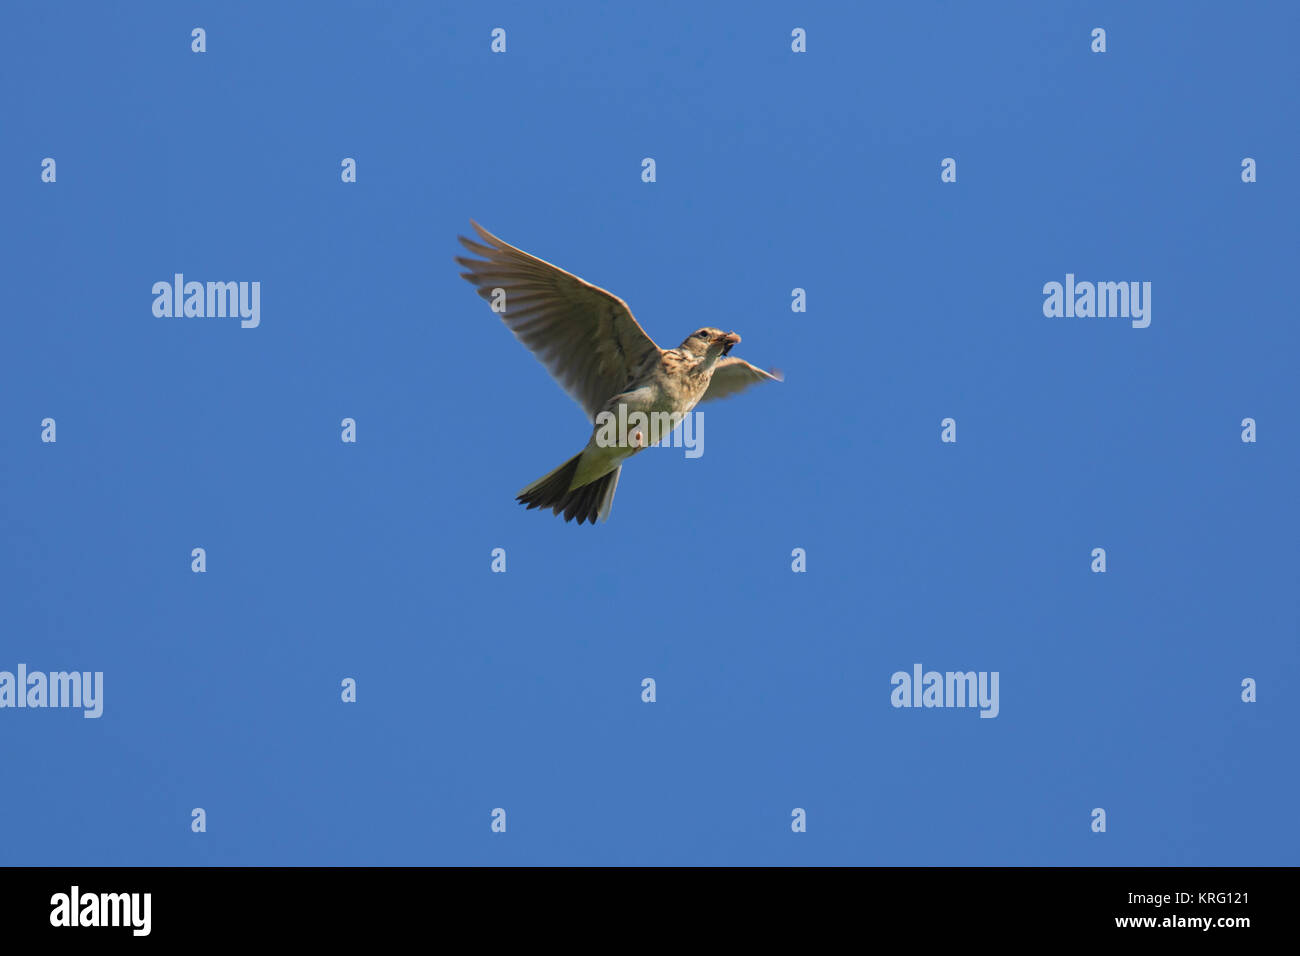 Eurasian skylark / common skylark (Alauda arvensis) flying with caught grub in beak against blue sky Stock Photo